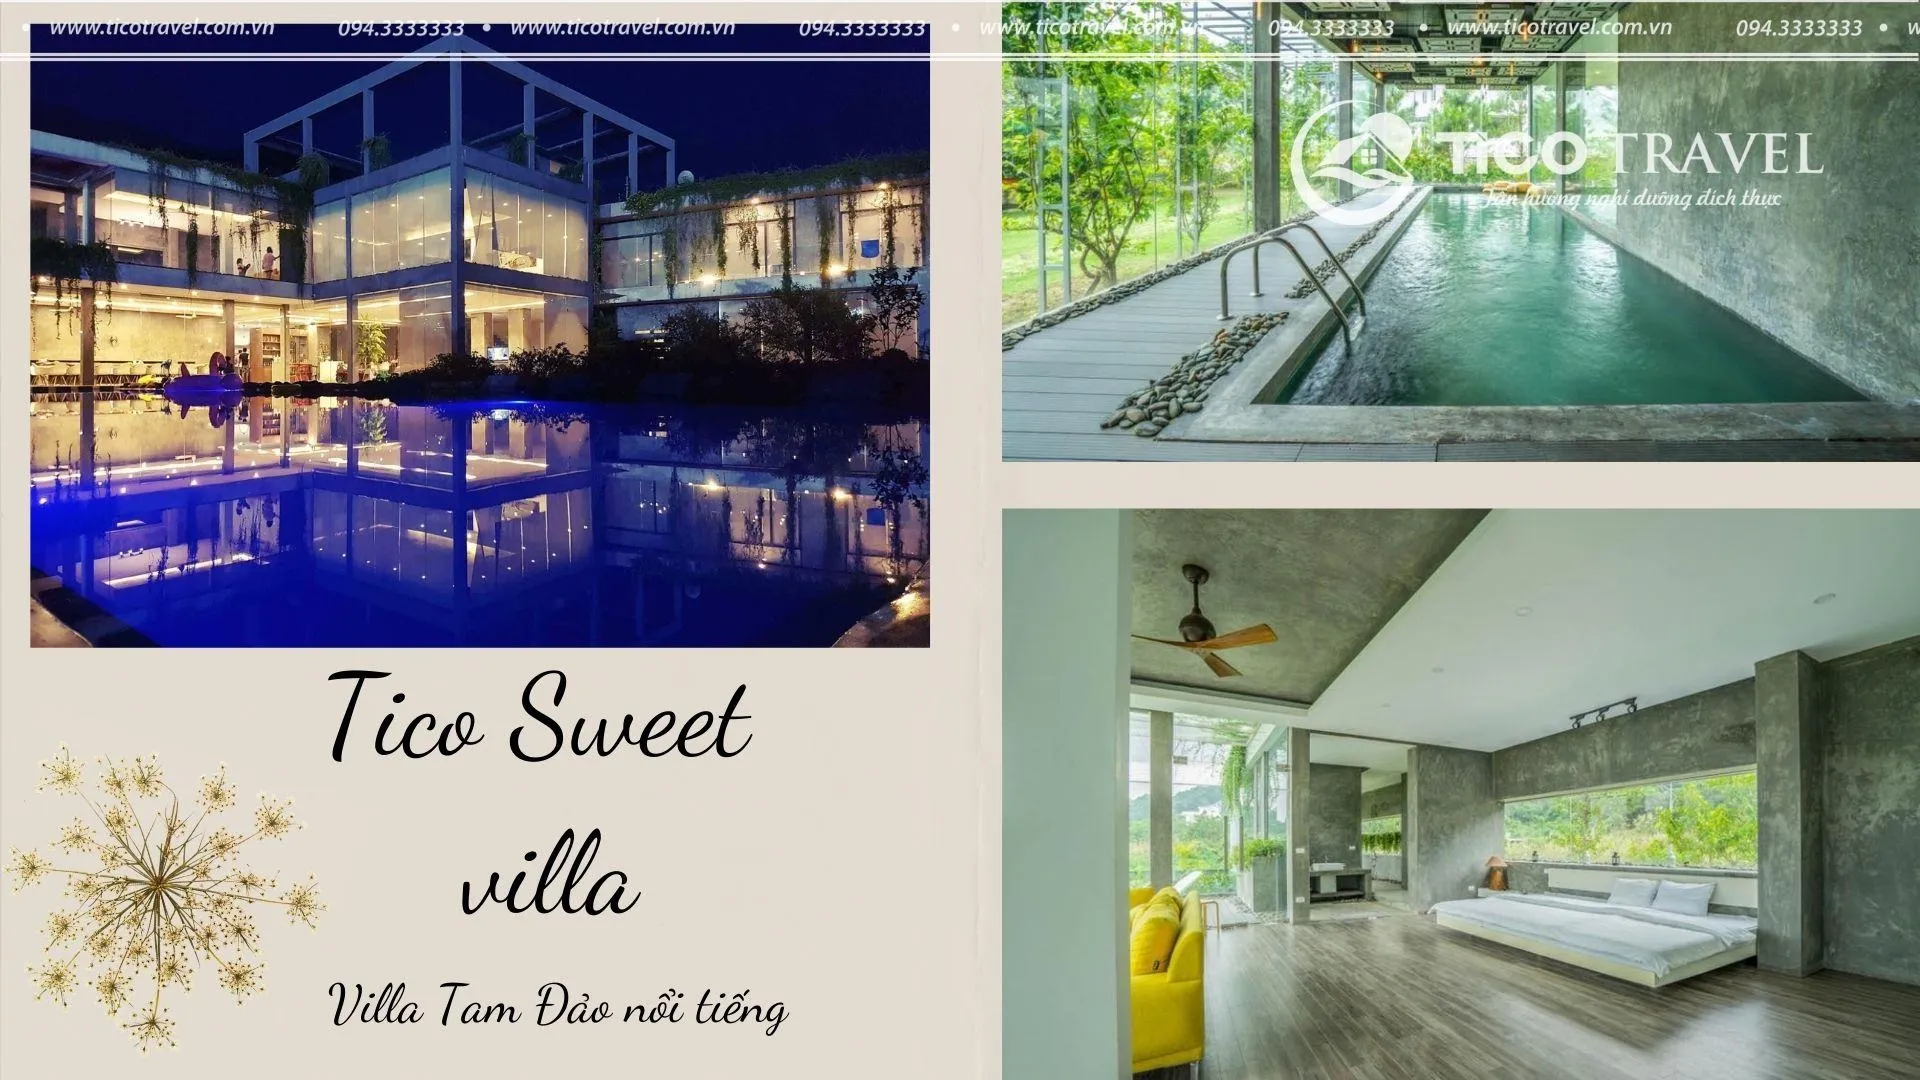 Tico 04 Sweet house - villa quanh Hà Nội nổi tiếng